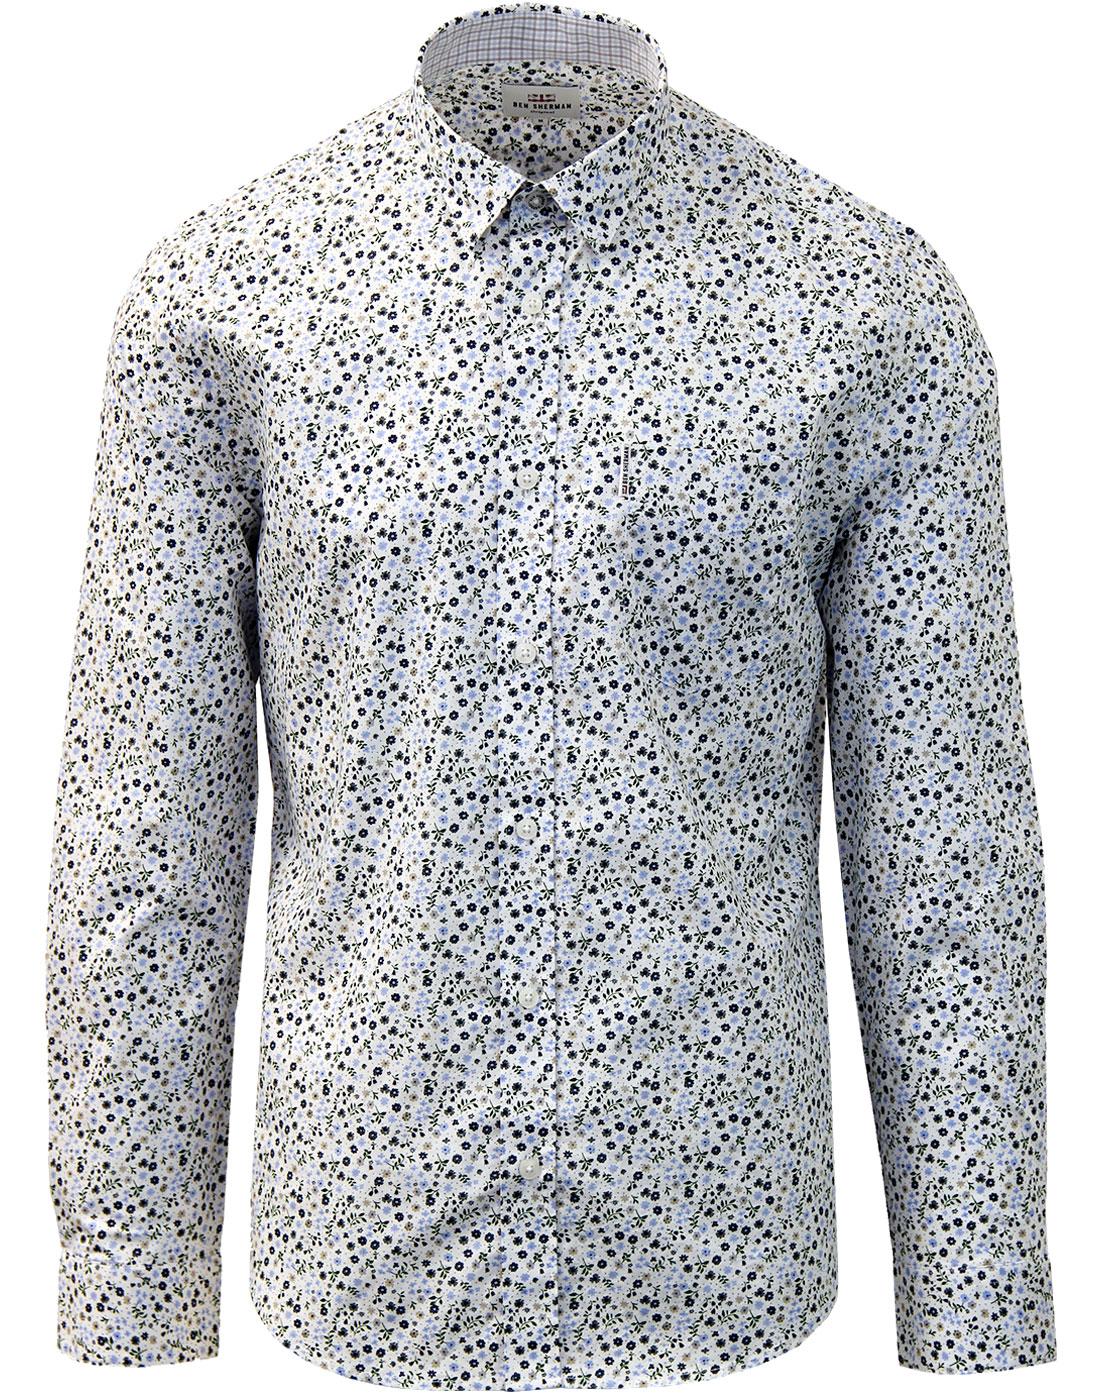 BEN SHERMAN Men's Retro Mod Micro Floral Shirt in White